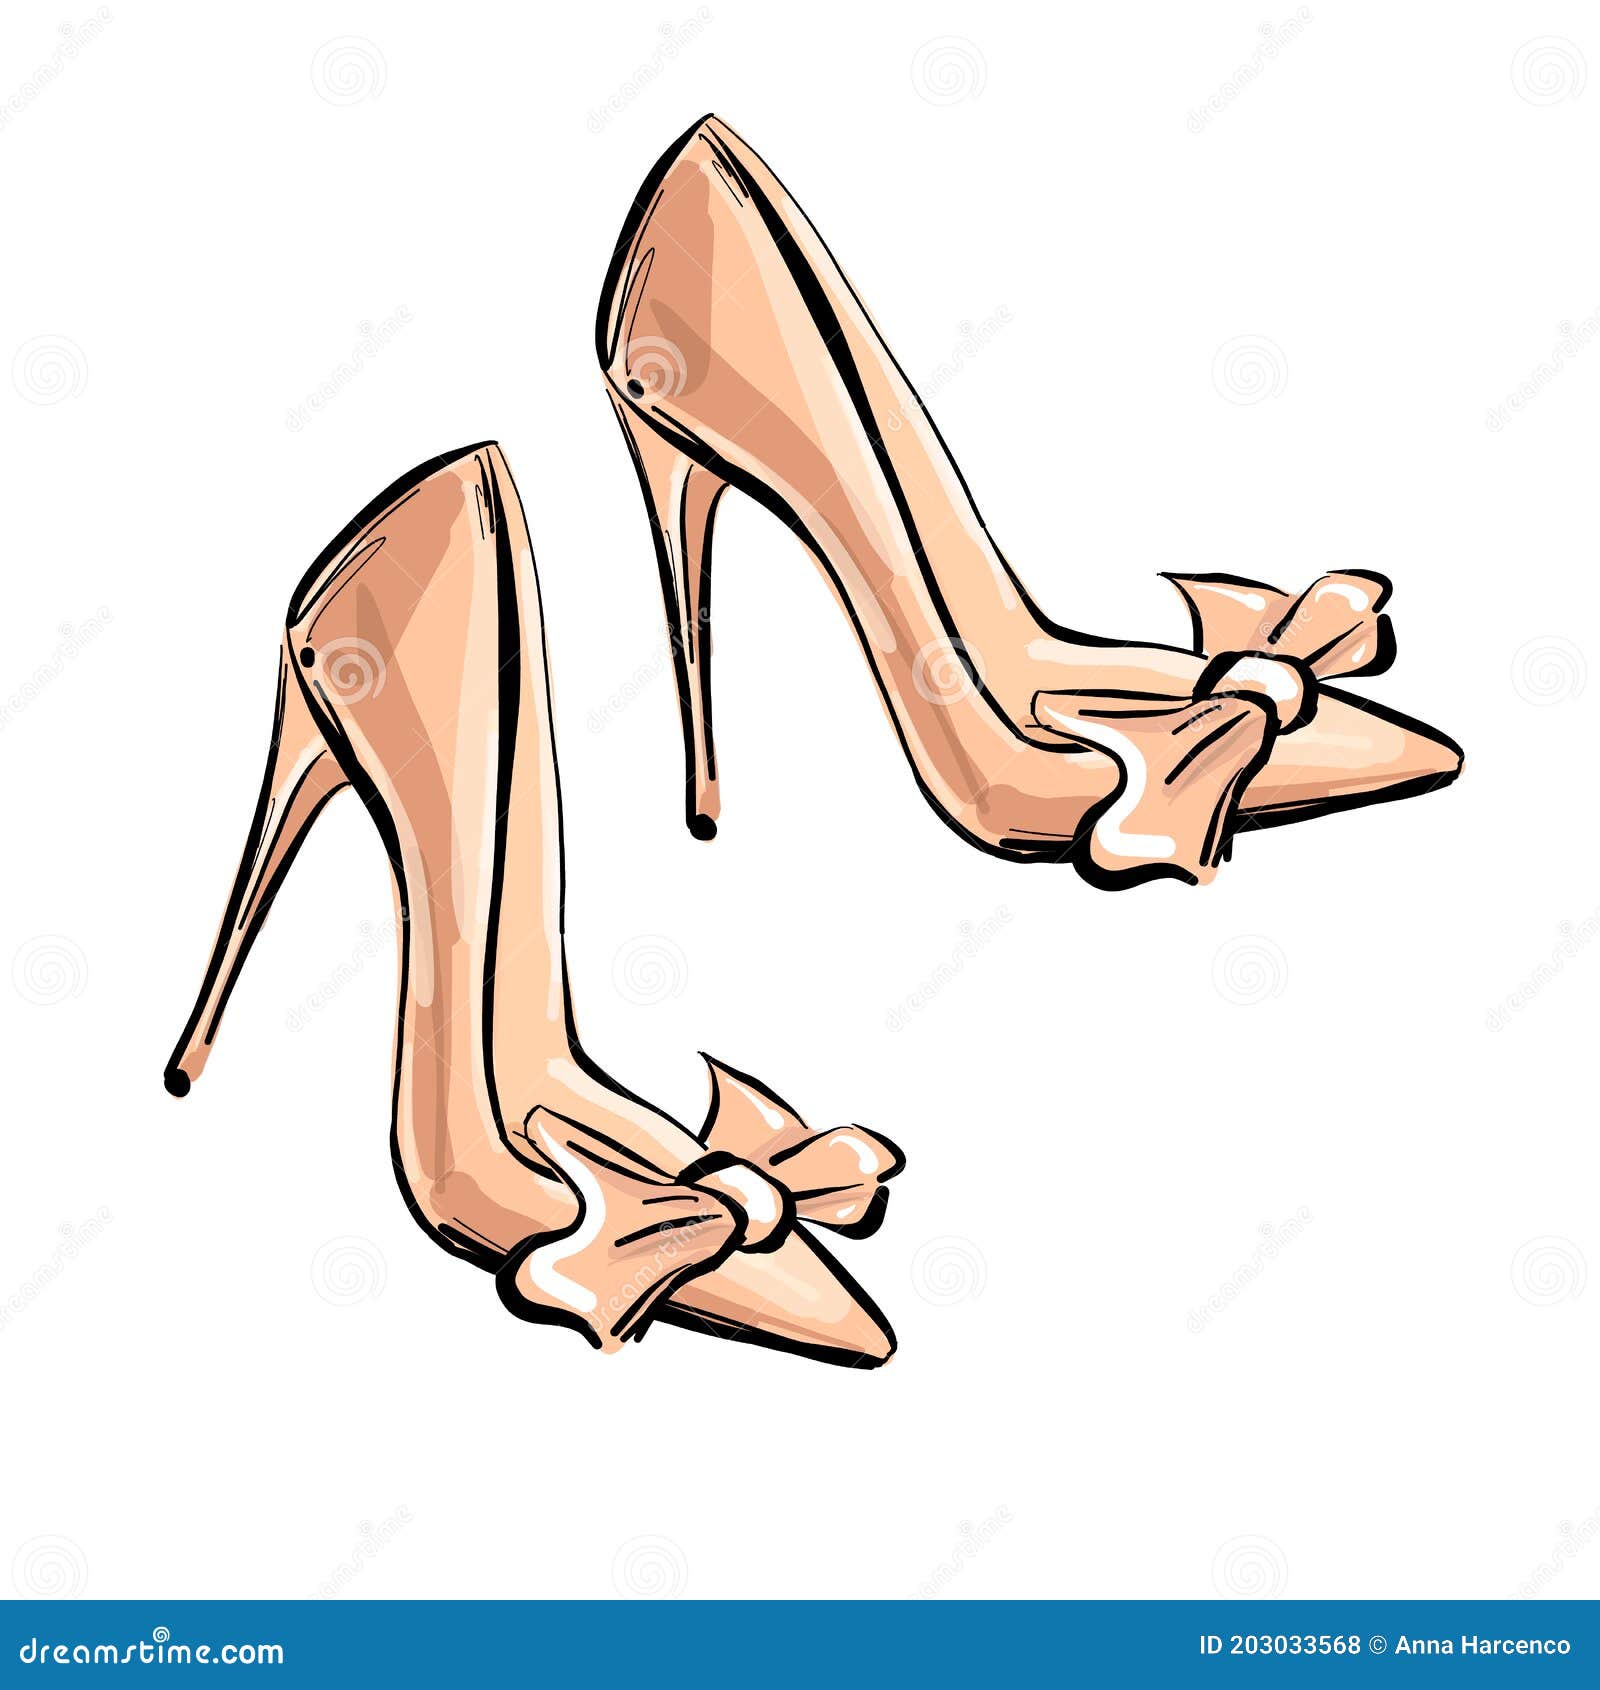 Ladies Cheap Faux Suede Platform Stiletto Heels Ankle Strap Party Shoes SALE  | eBay